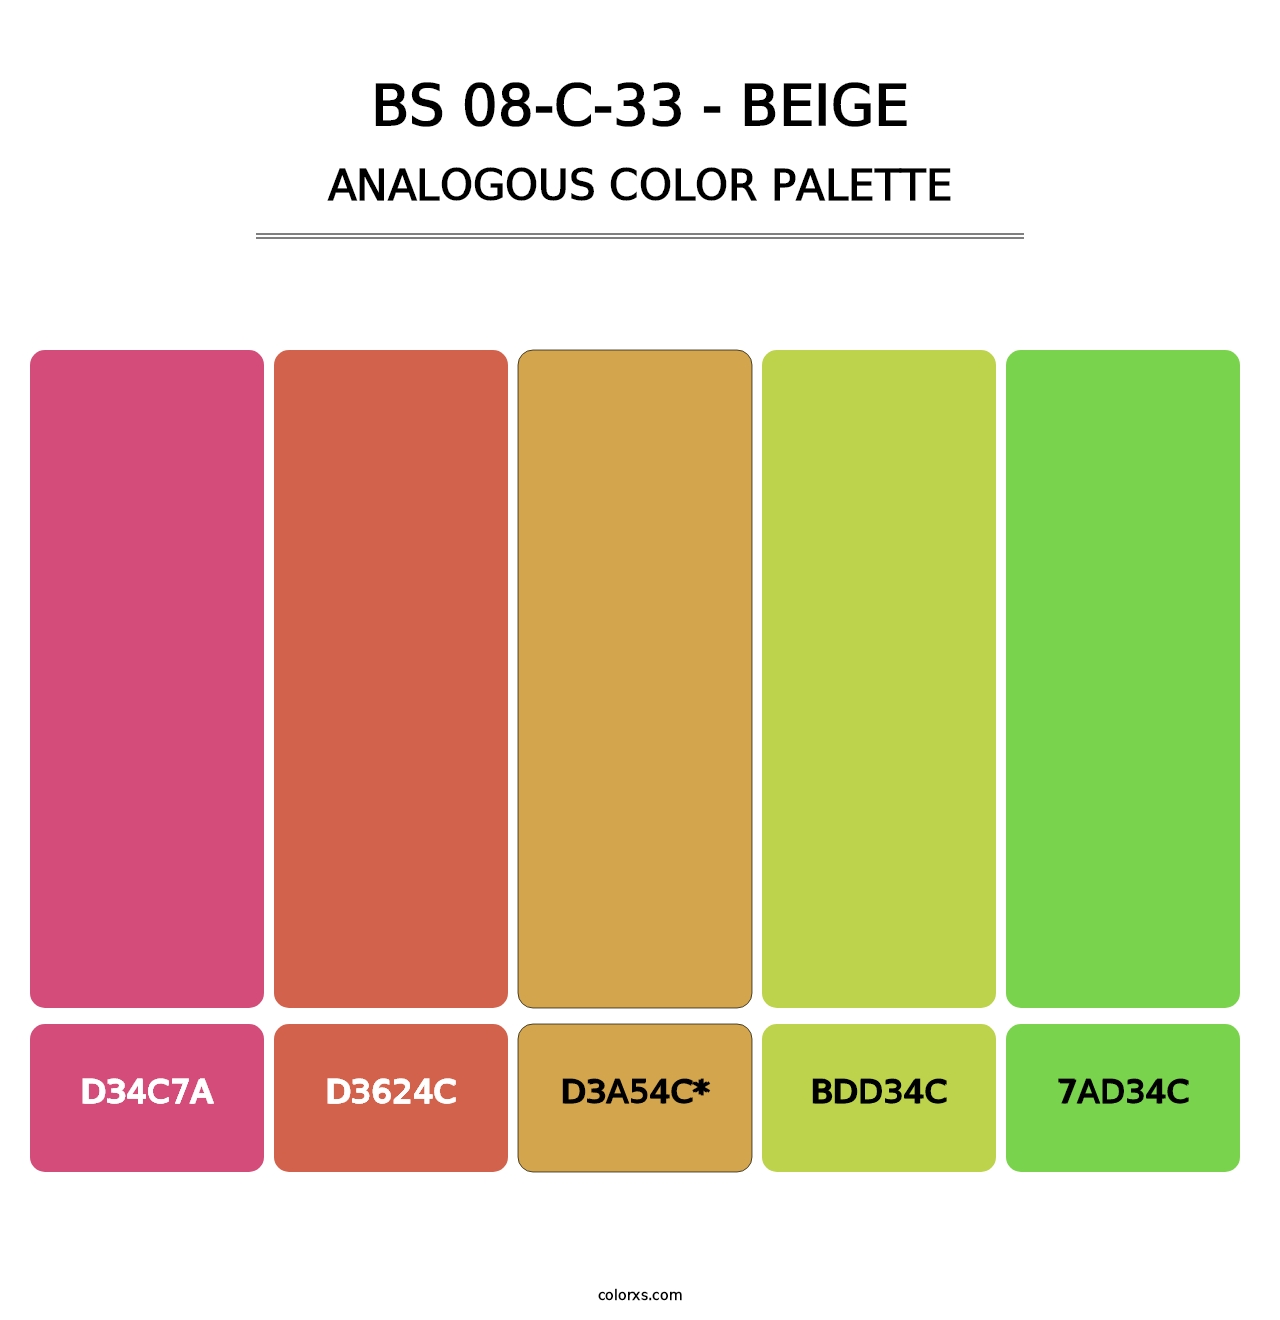 BS 08-C-33 - Beige - Analogous Color Palette